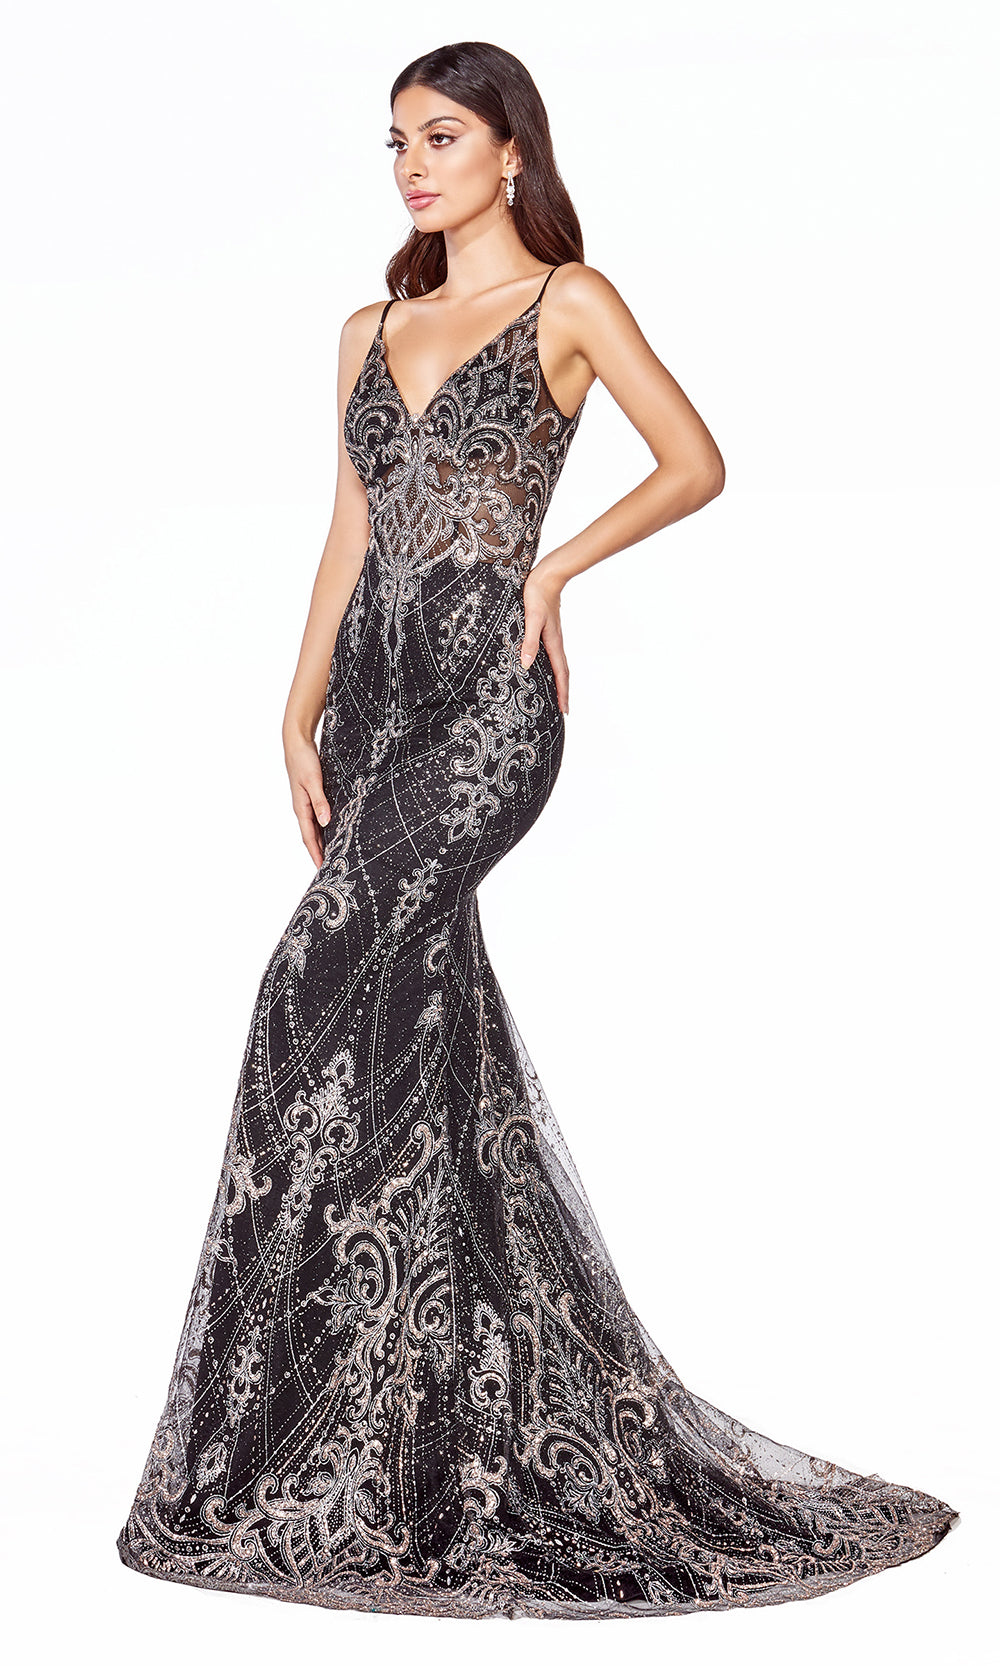 Cinderella Divine C27 long black sequin lace dress with straps & low back-side shot of dress.jpg